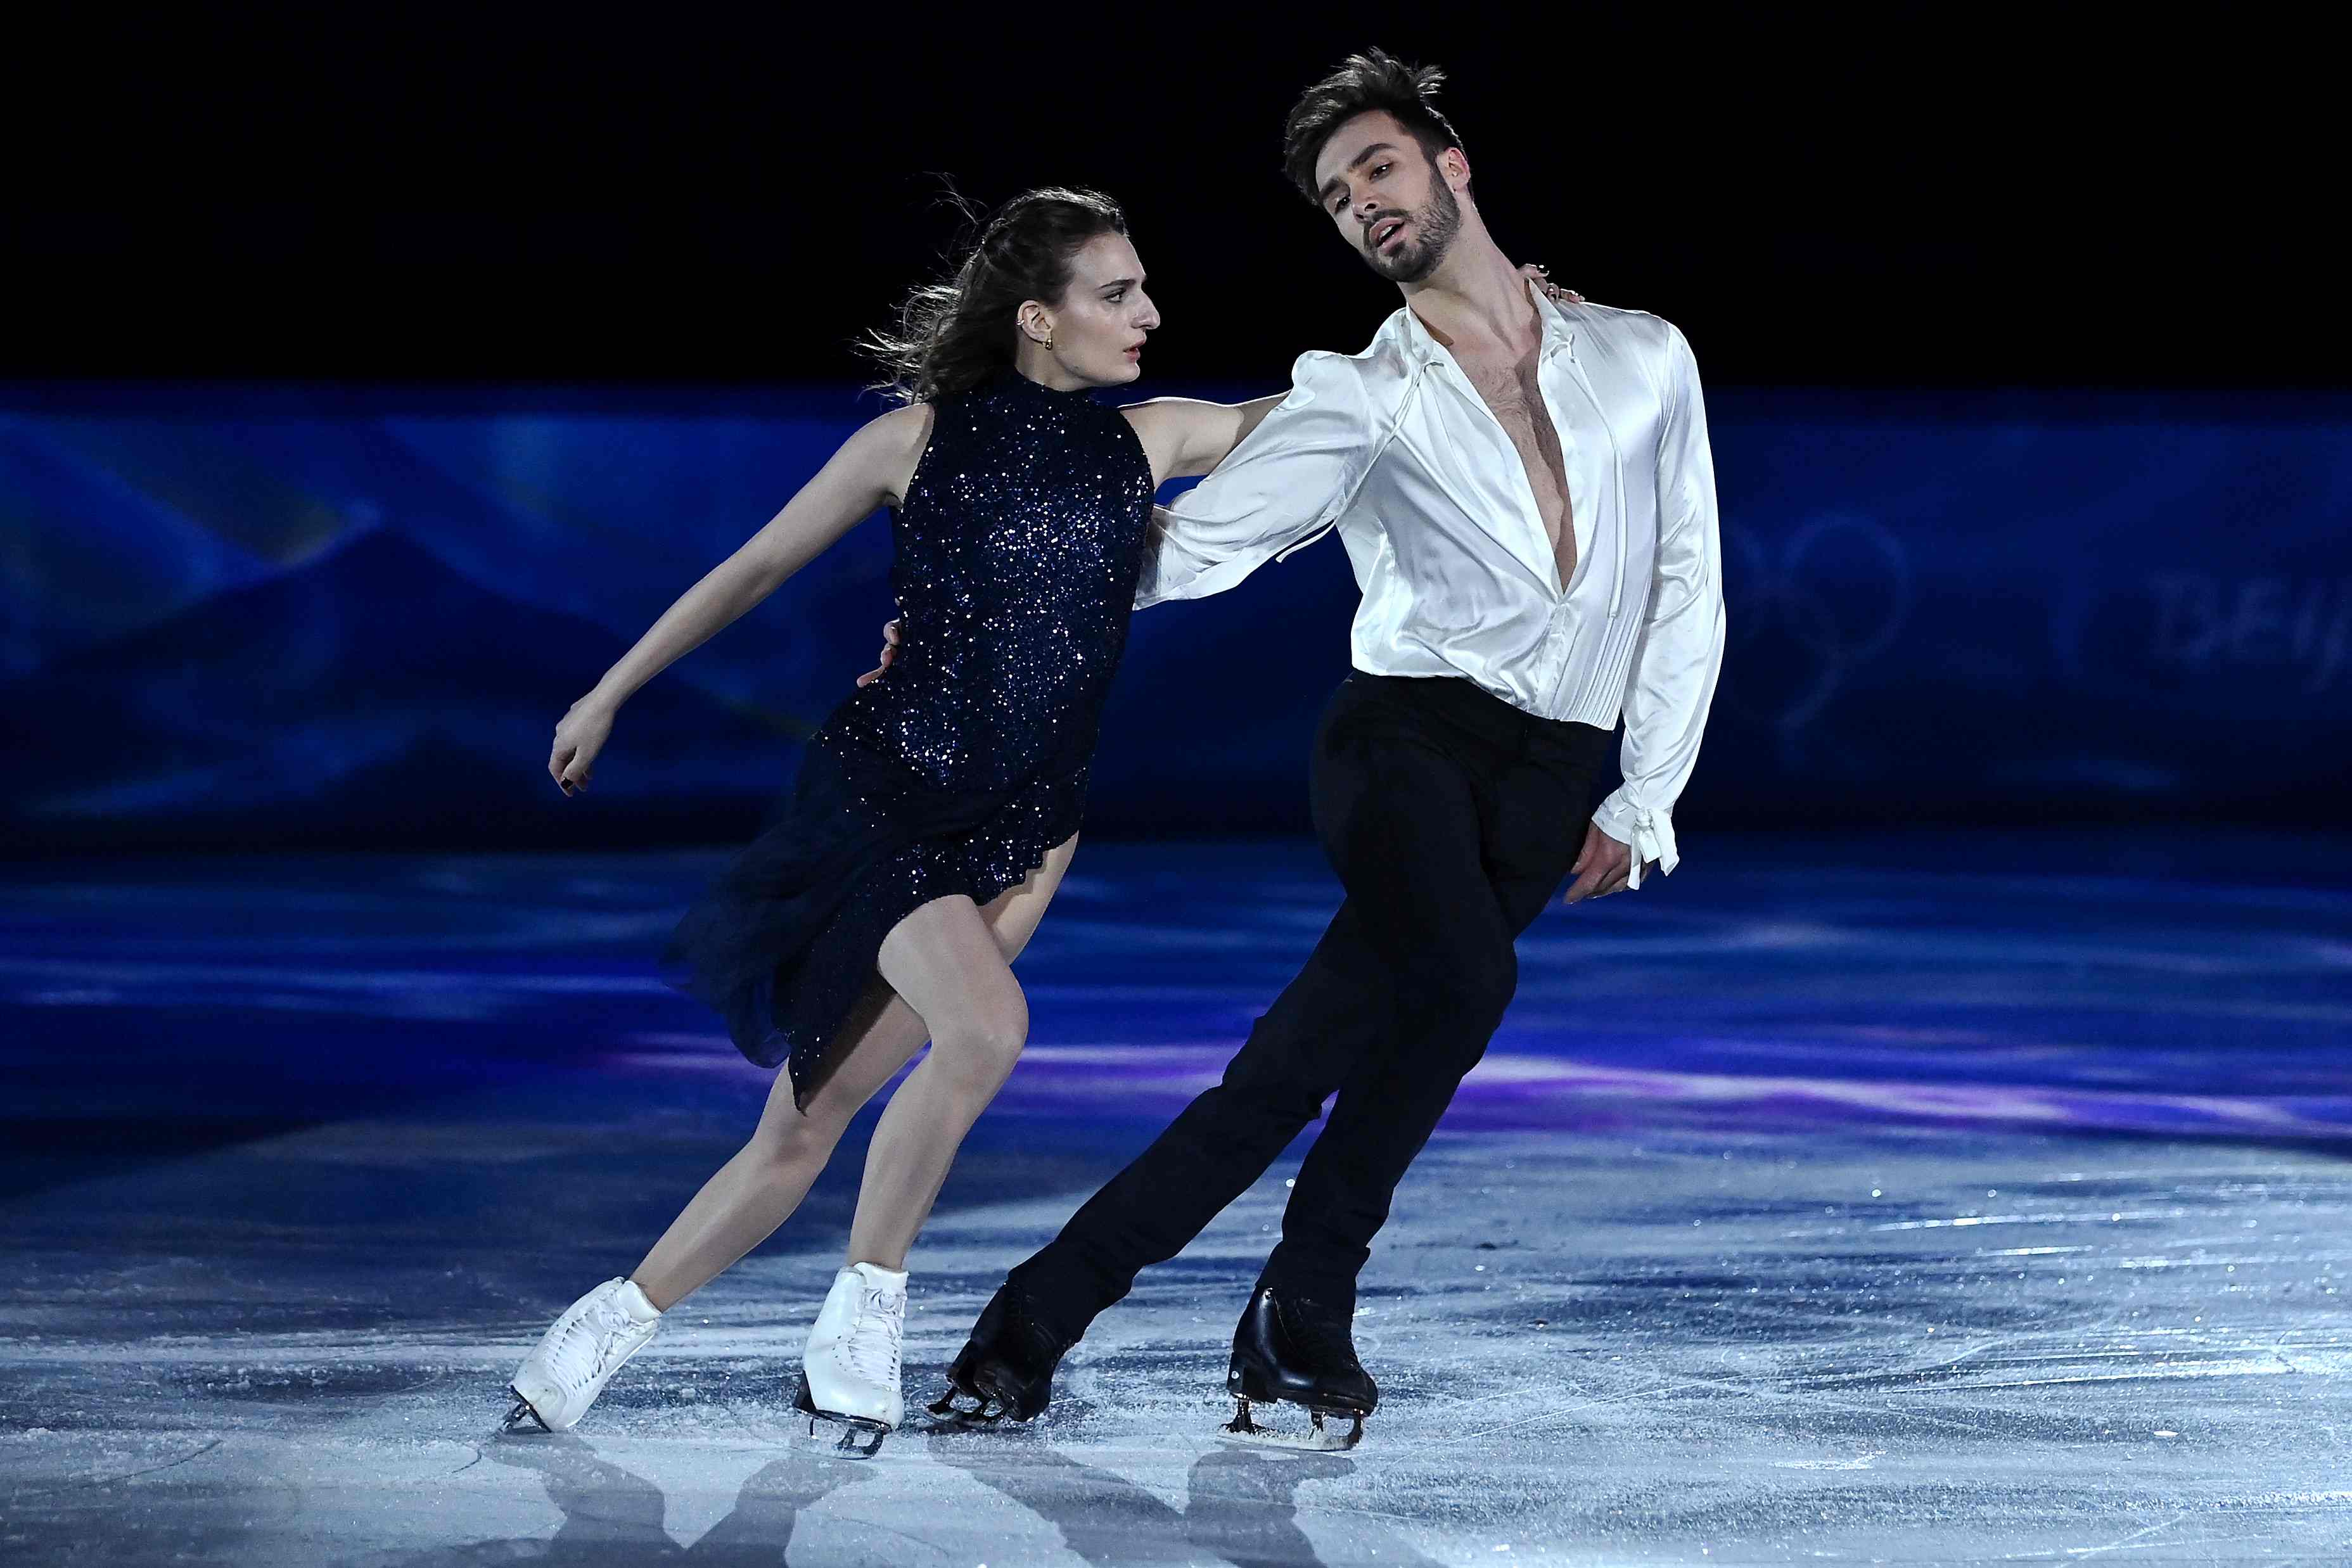 Gabriella Papadakis et Guillaume Cizeron gala de clôture de Pékin 2022 danse sur glace patinage artistique champion olympique médaille d'or